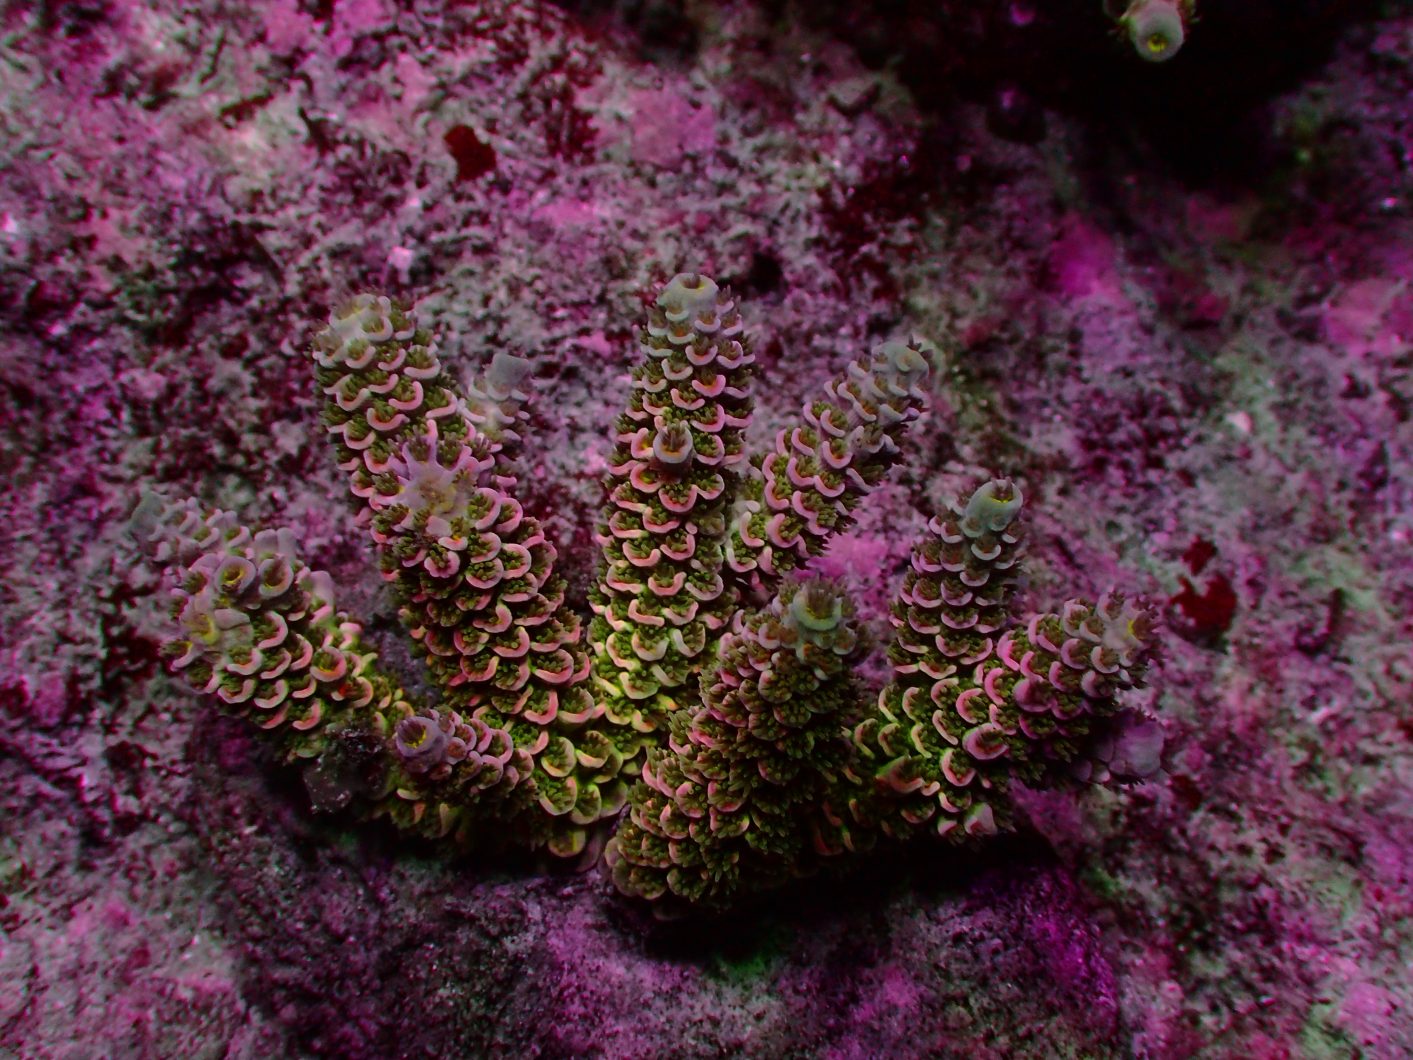 belysning av saltvanns koraller